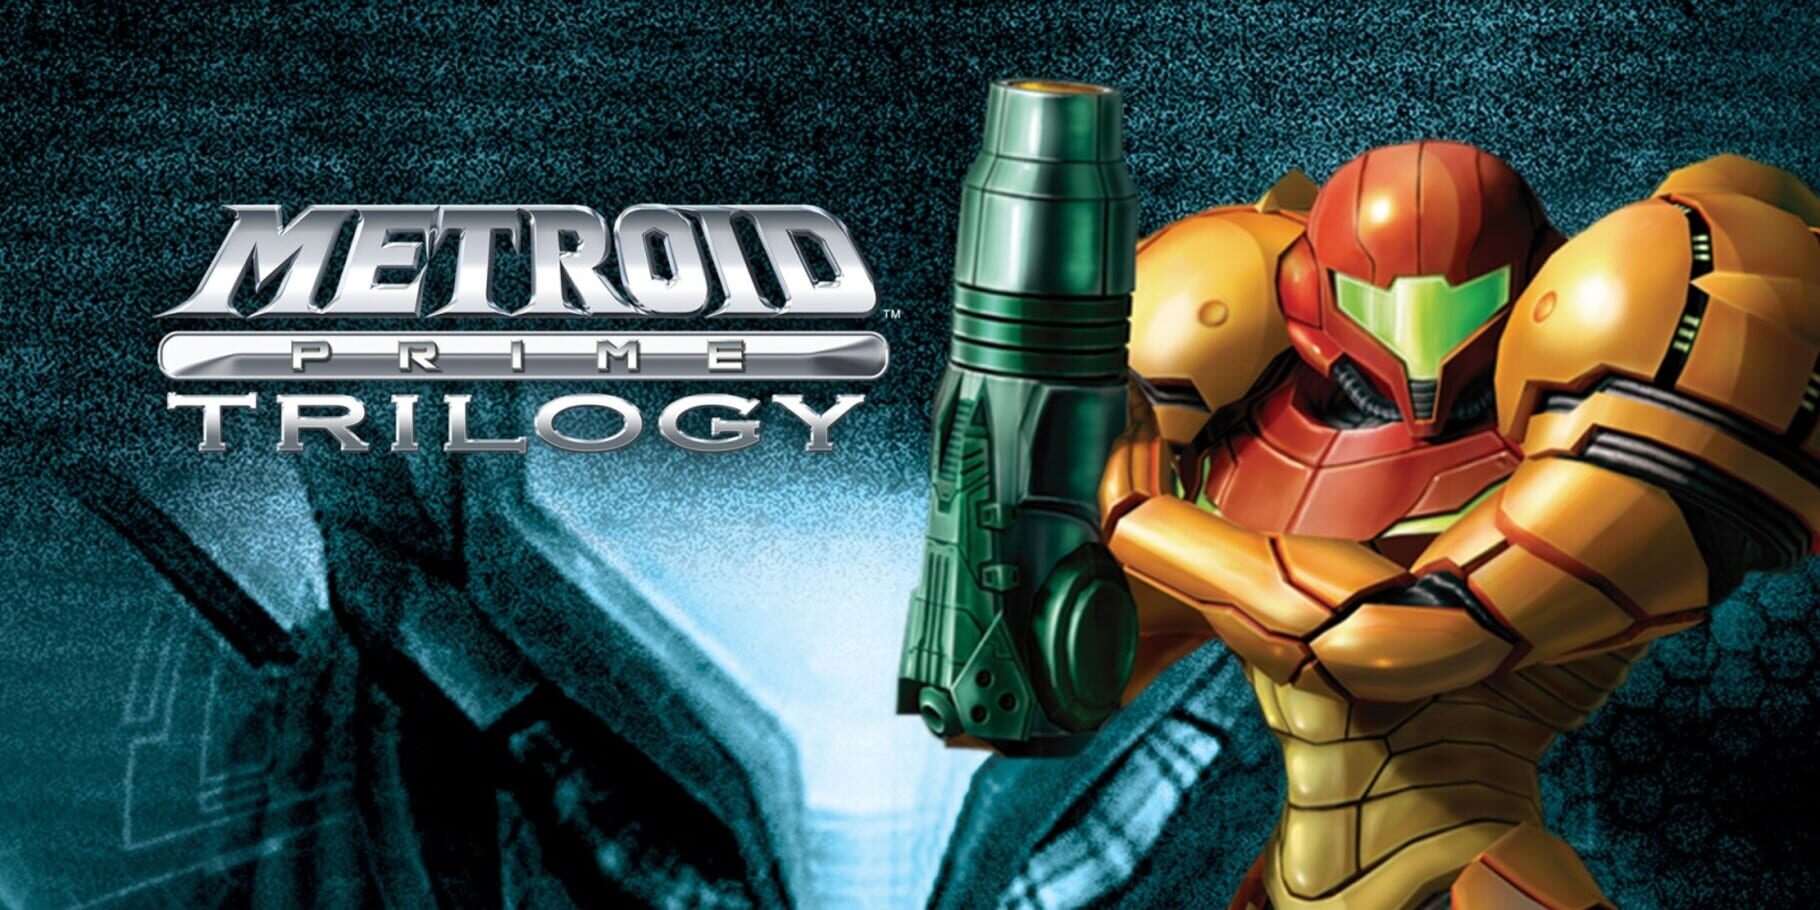 Arte - Metroid Prime: Trilogy